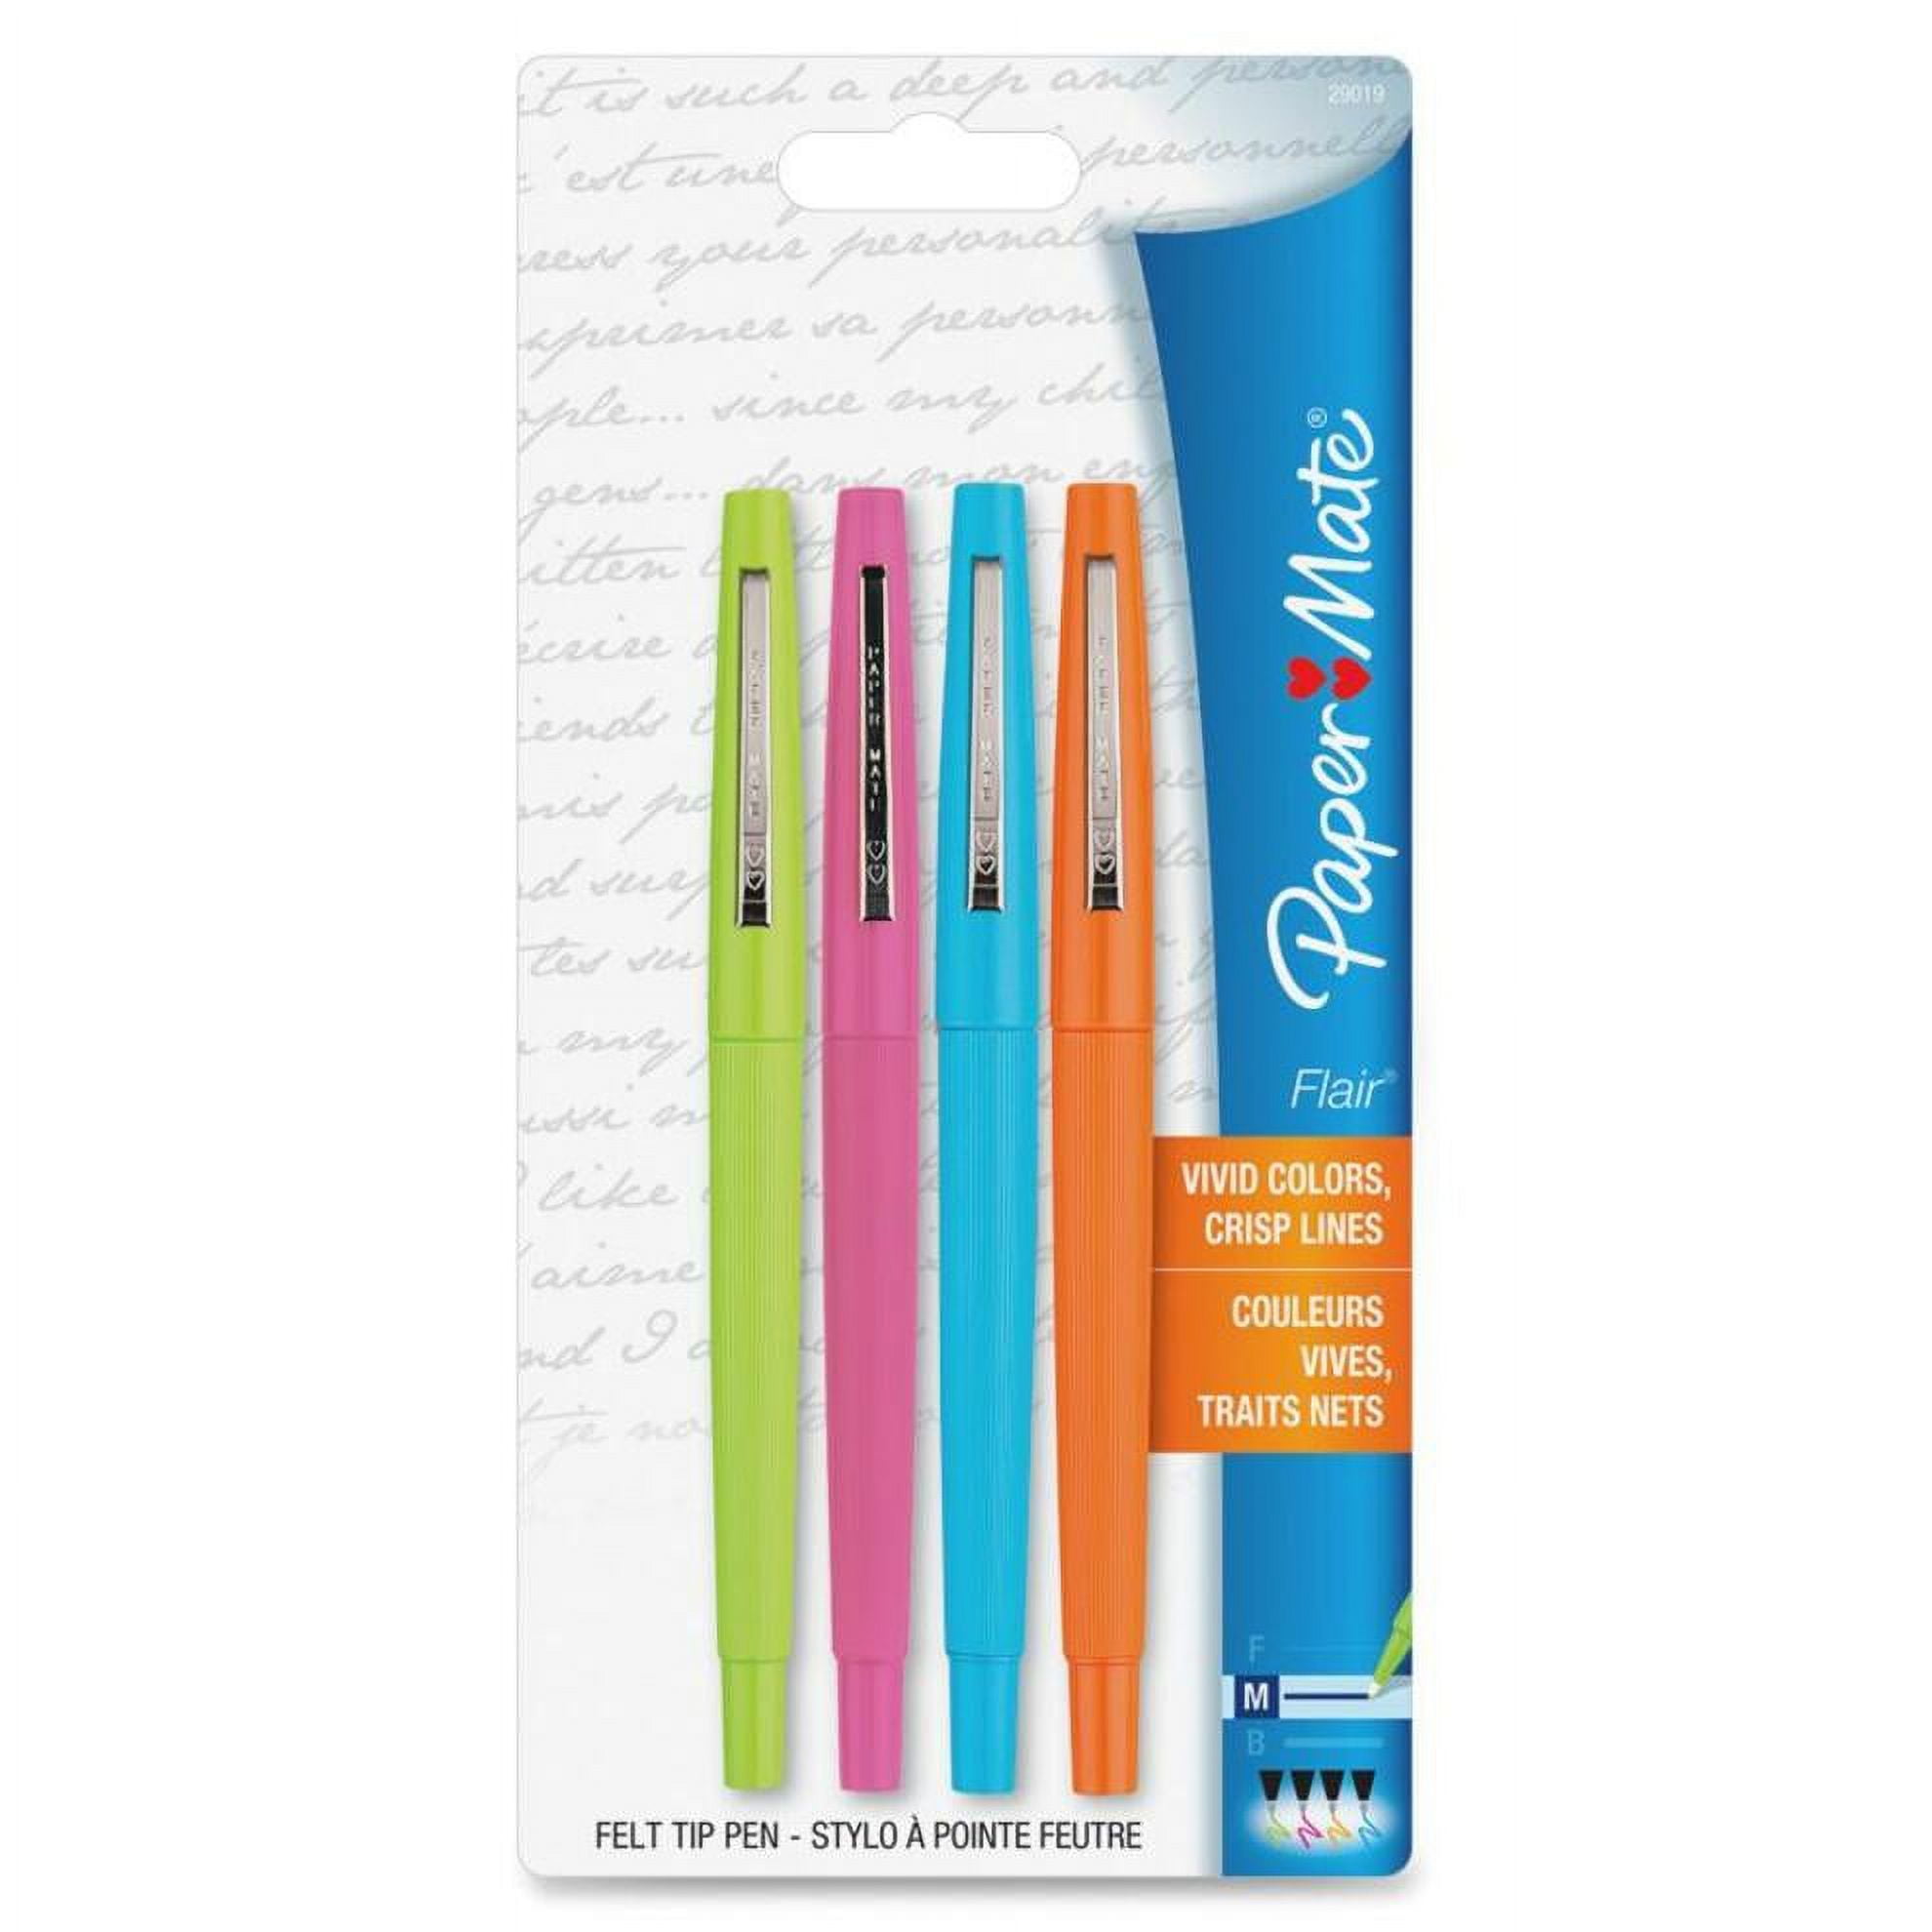 Paper Mate, PAP29019, Flair Point Guard Felt Tip Marker Pens, 4